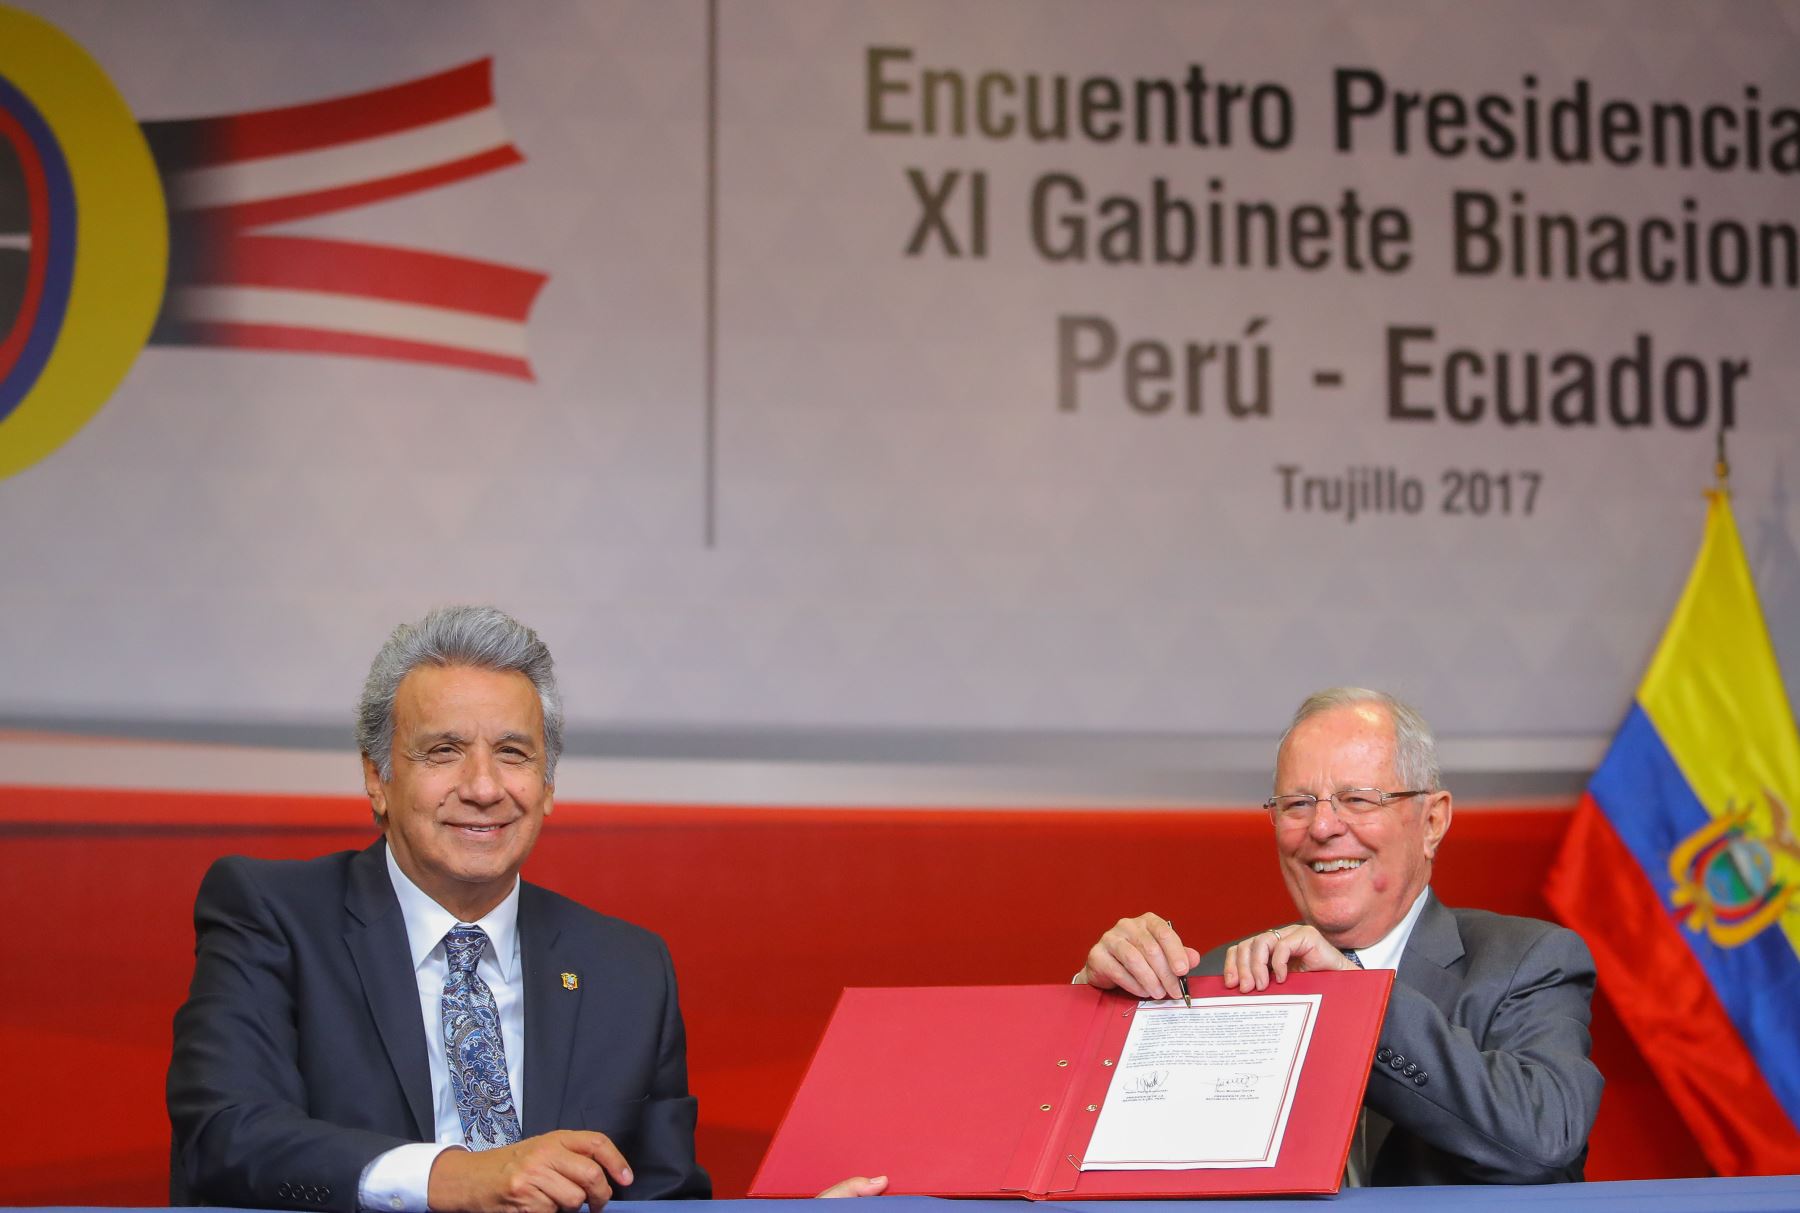 Mandatarios de Perú y Ecuador suscriben Declaración de Trujillo y Plan de Acción al finalizar Encuentro Presidencial y 11º Gabinete Binacional Perú - Ecuador. Foto: ANDINA/ Prensa Presidencia